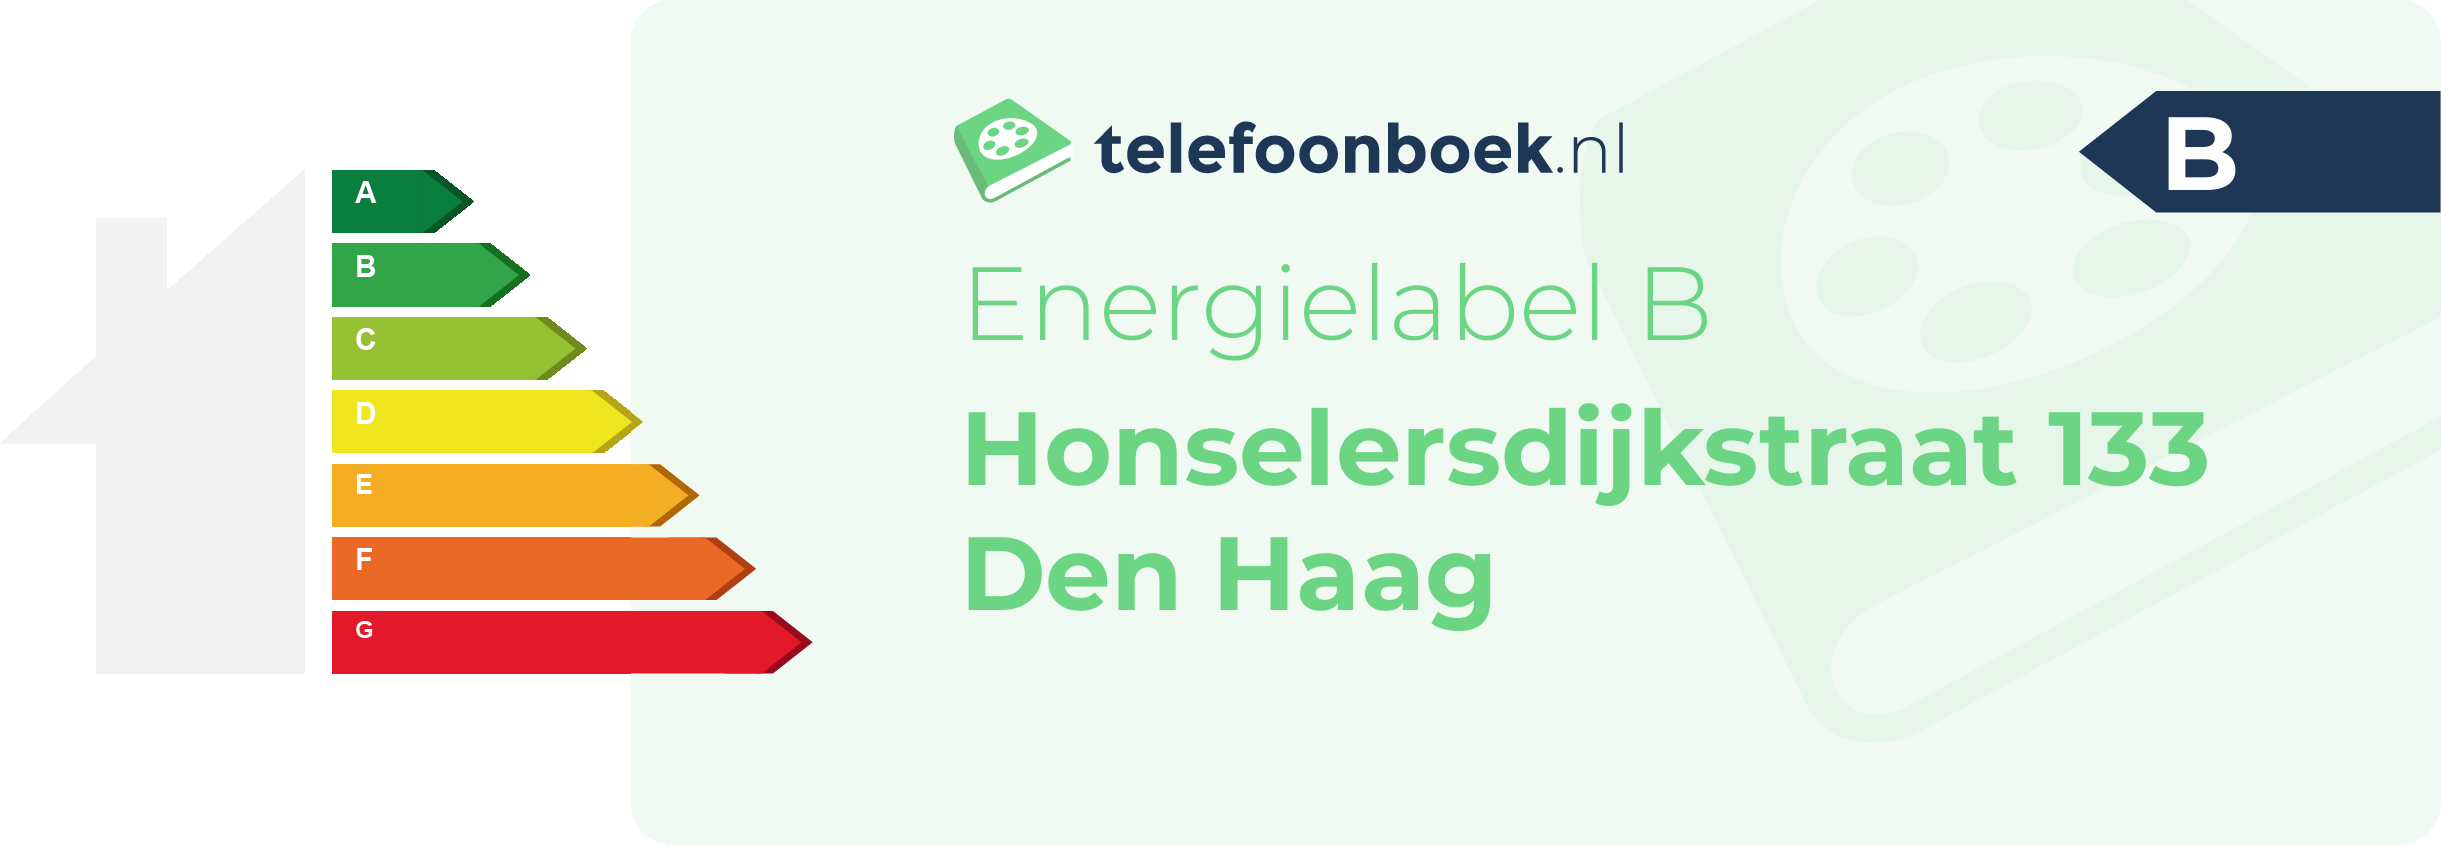 Energielabel Honselersdijkstraat 133 Den Haag